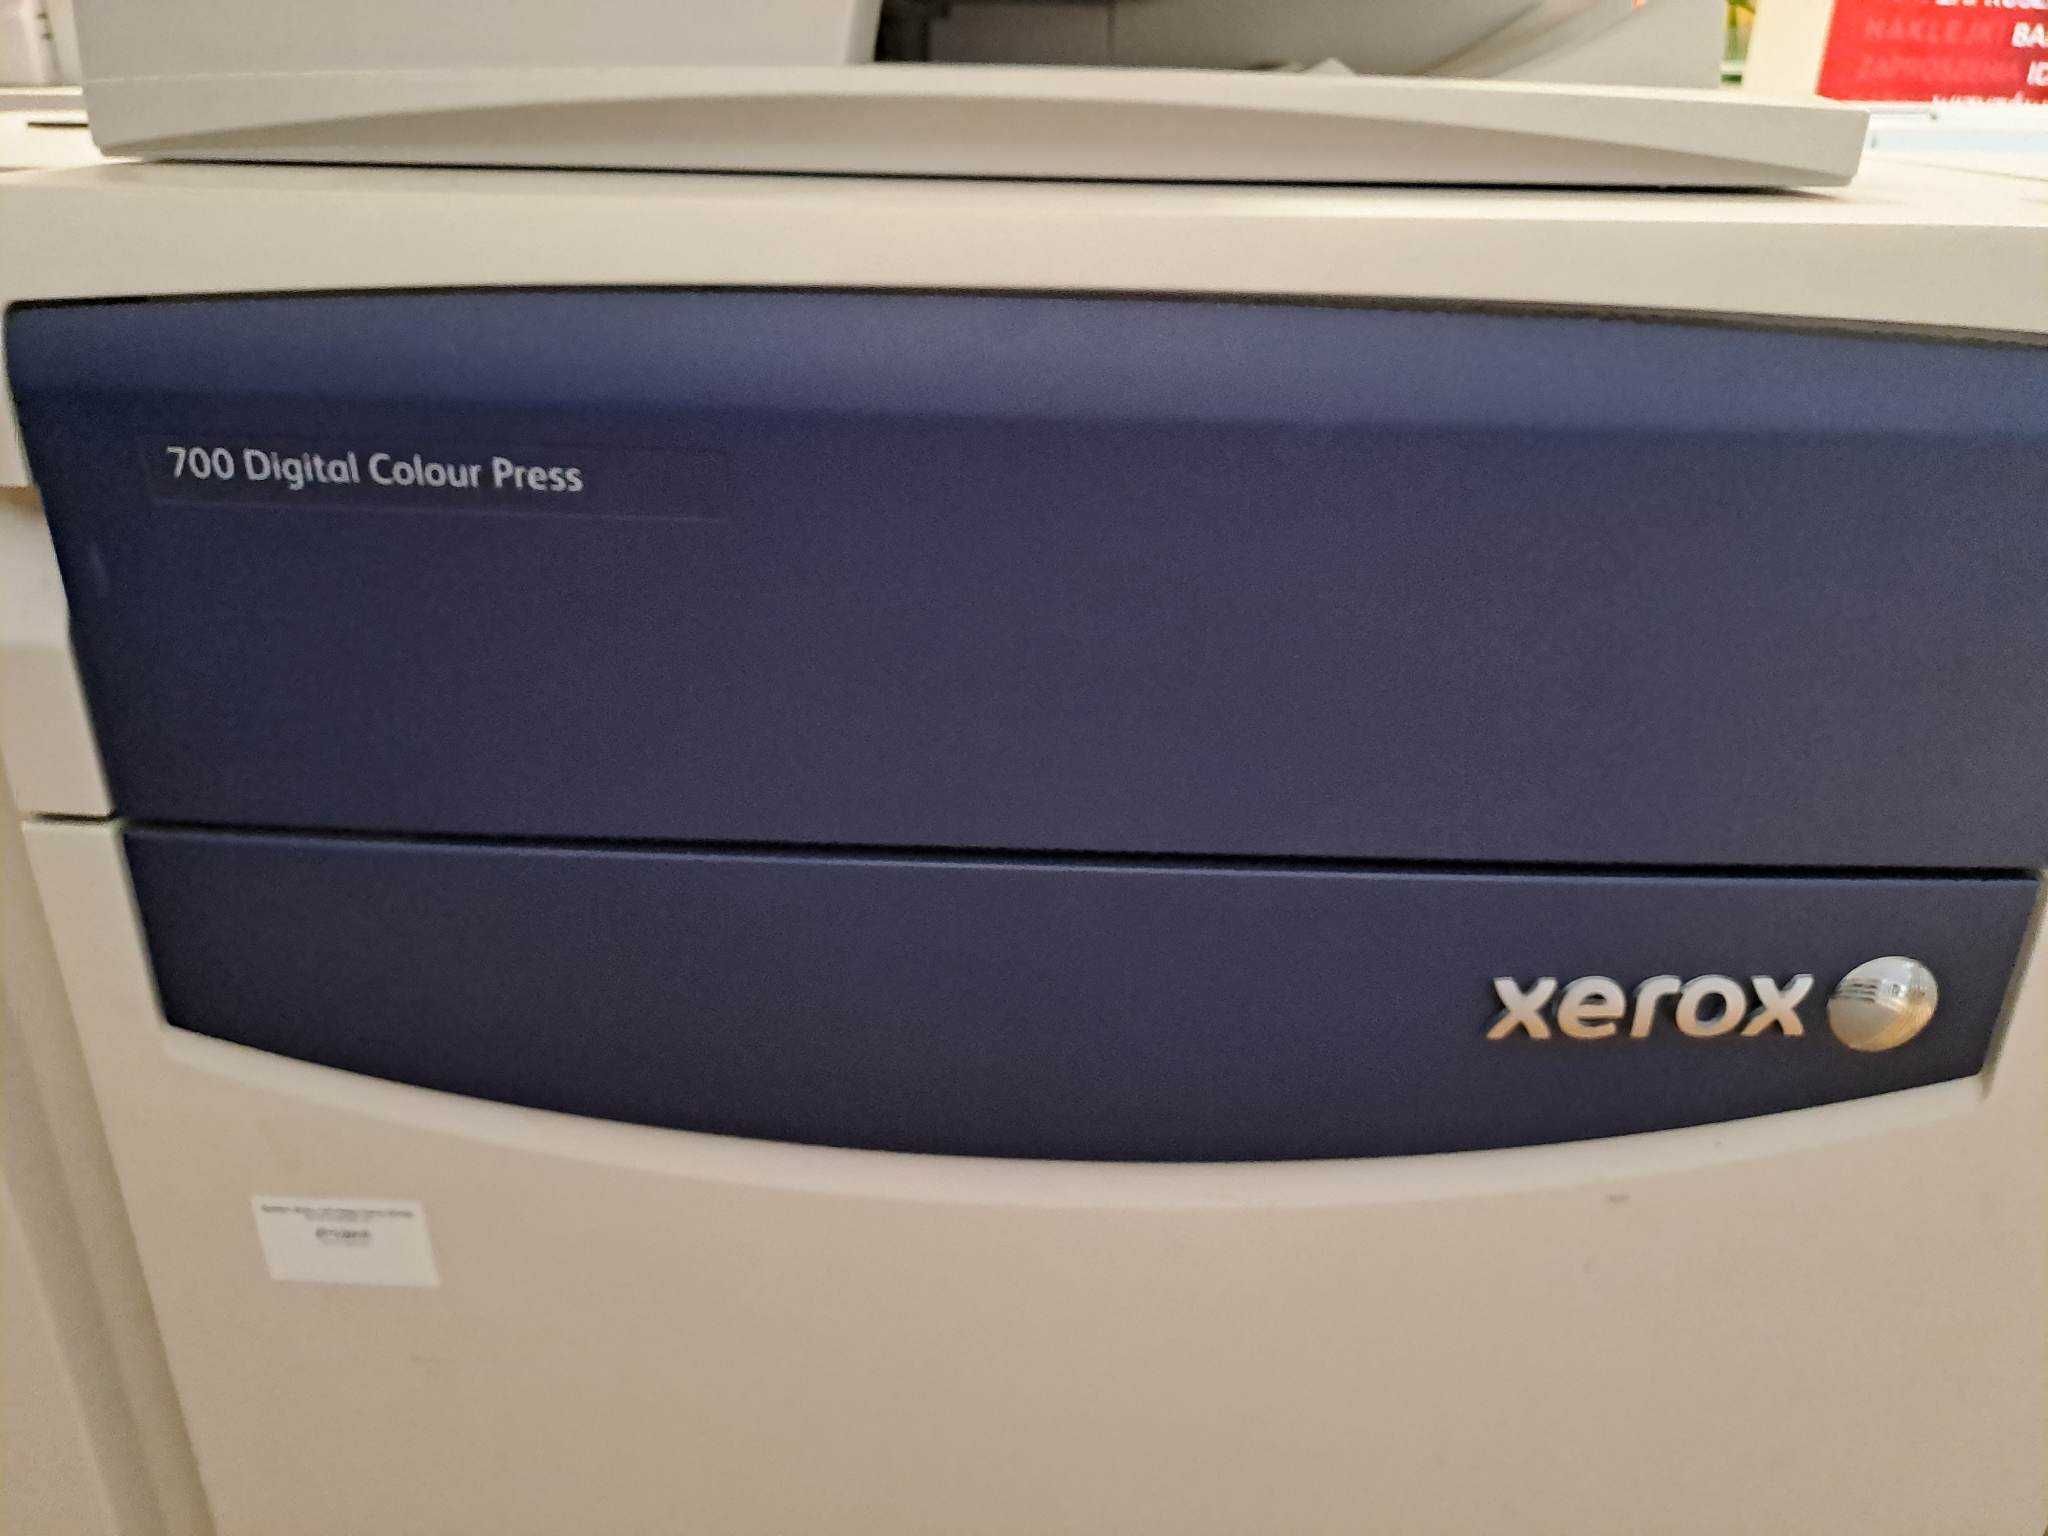 Sprzedam system druku cyfrowego: Xerox 700 Digital Colour Press.